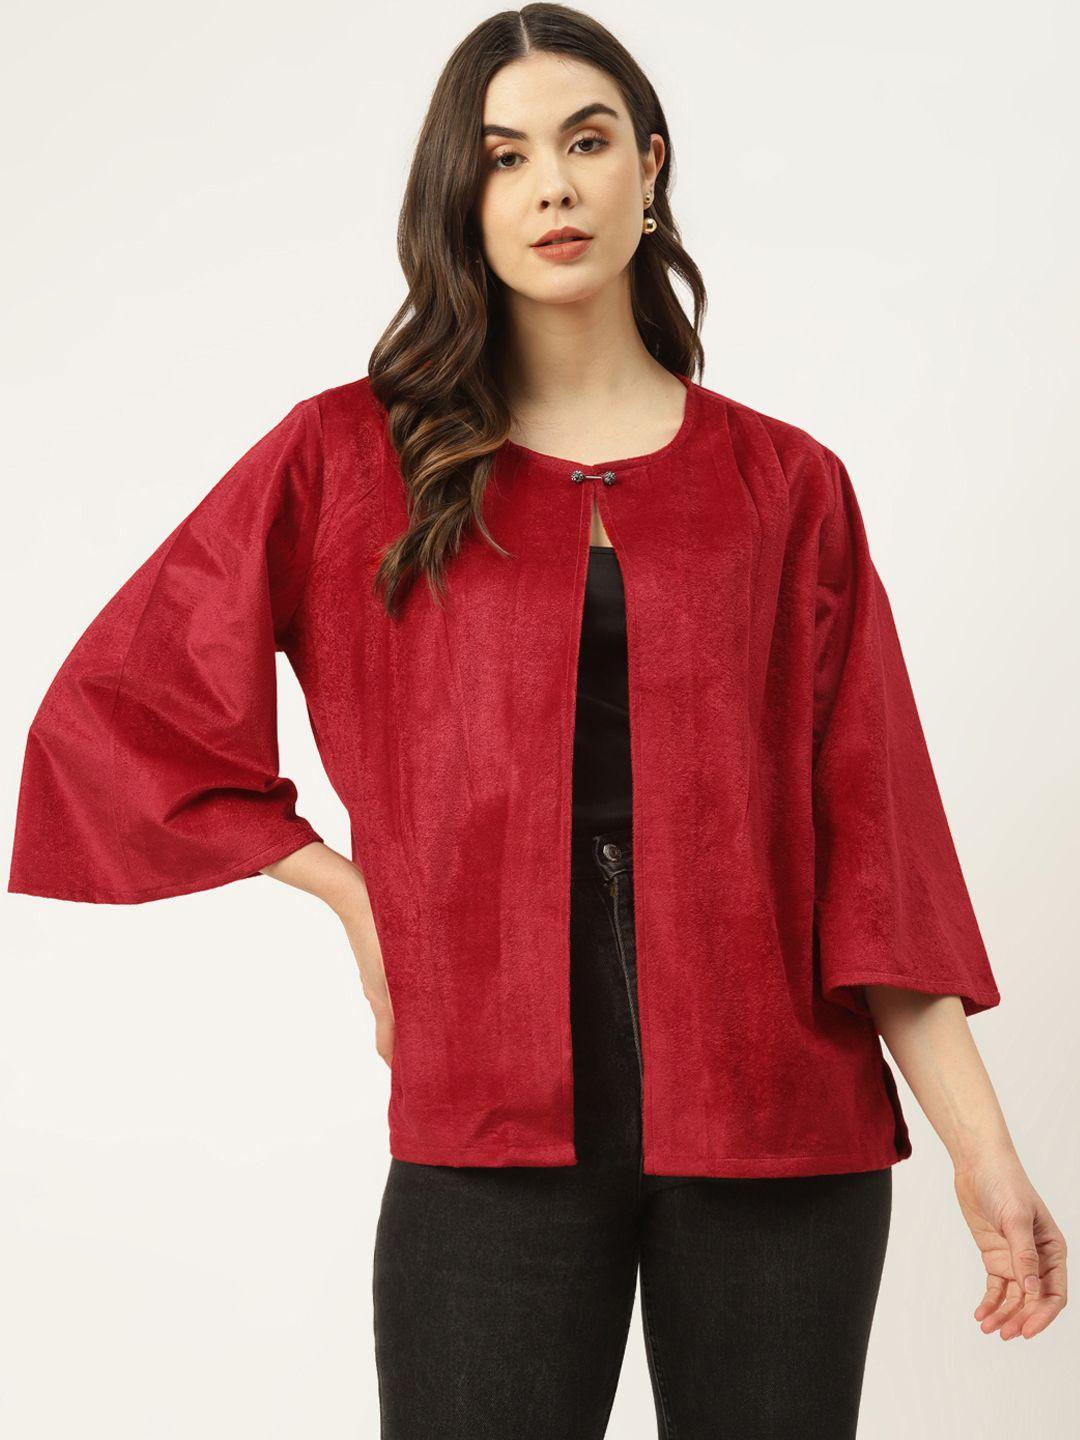 ursense women red solid cotton velvet finish pleated detail button shrug